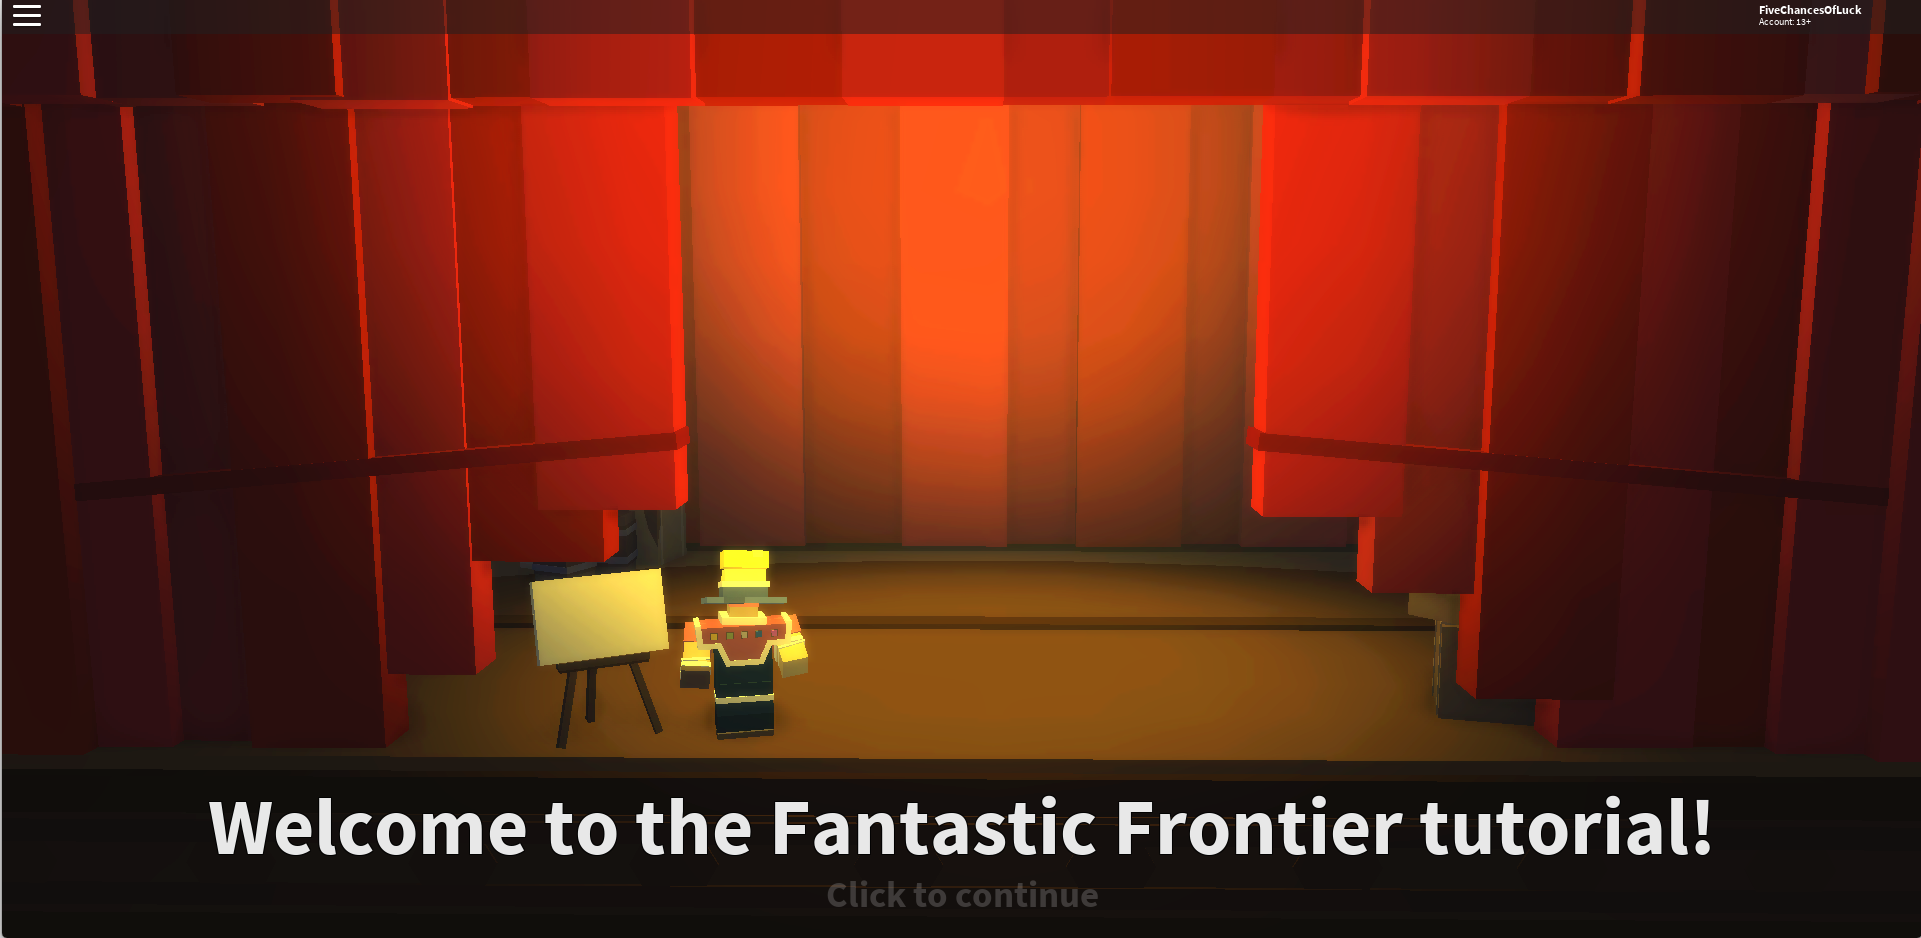 Tutorial Fantastic Frontier Roblox Wiki Fandom - roblox fantastic frontier how to use forge